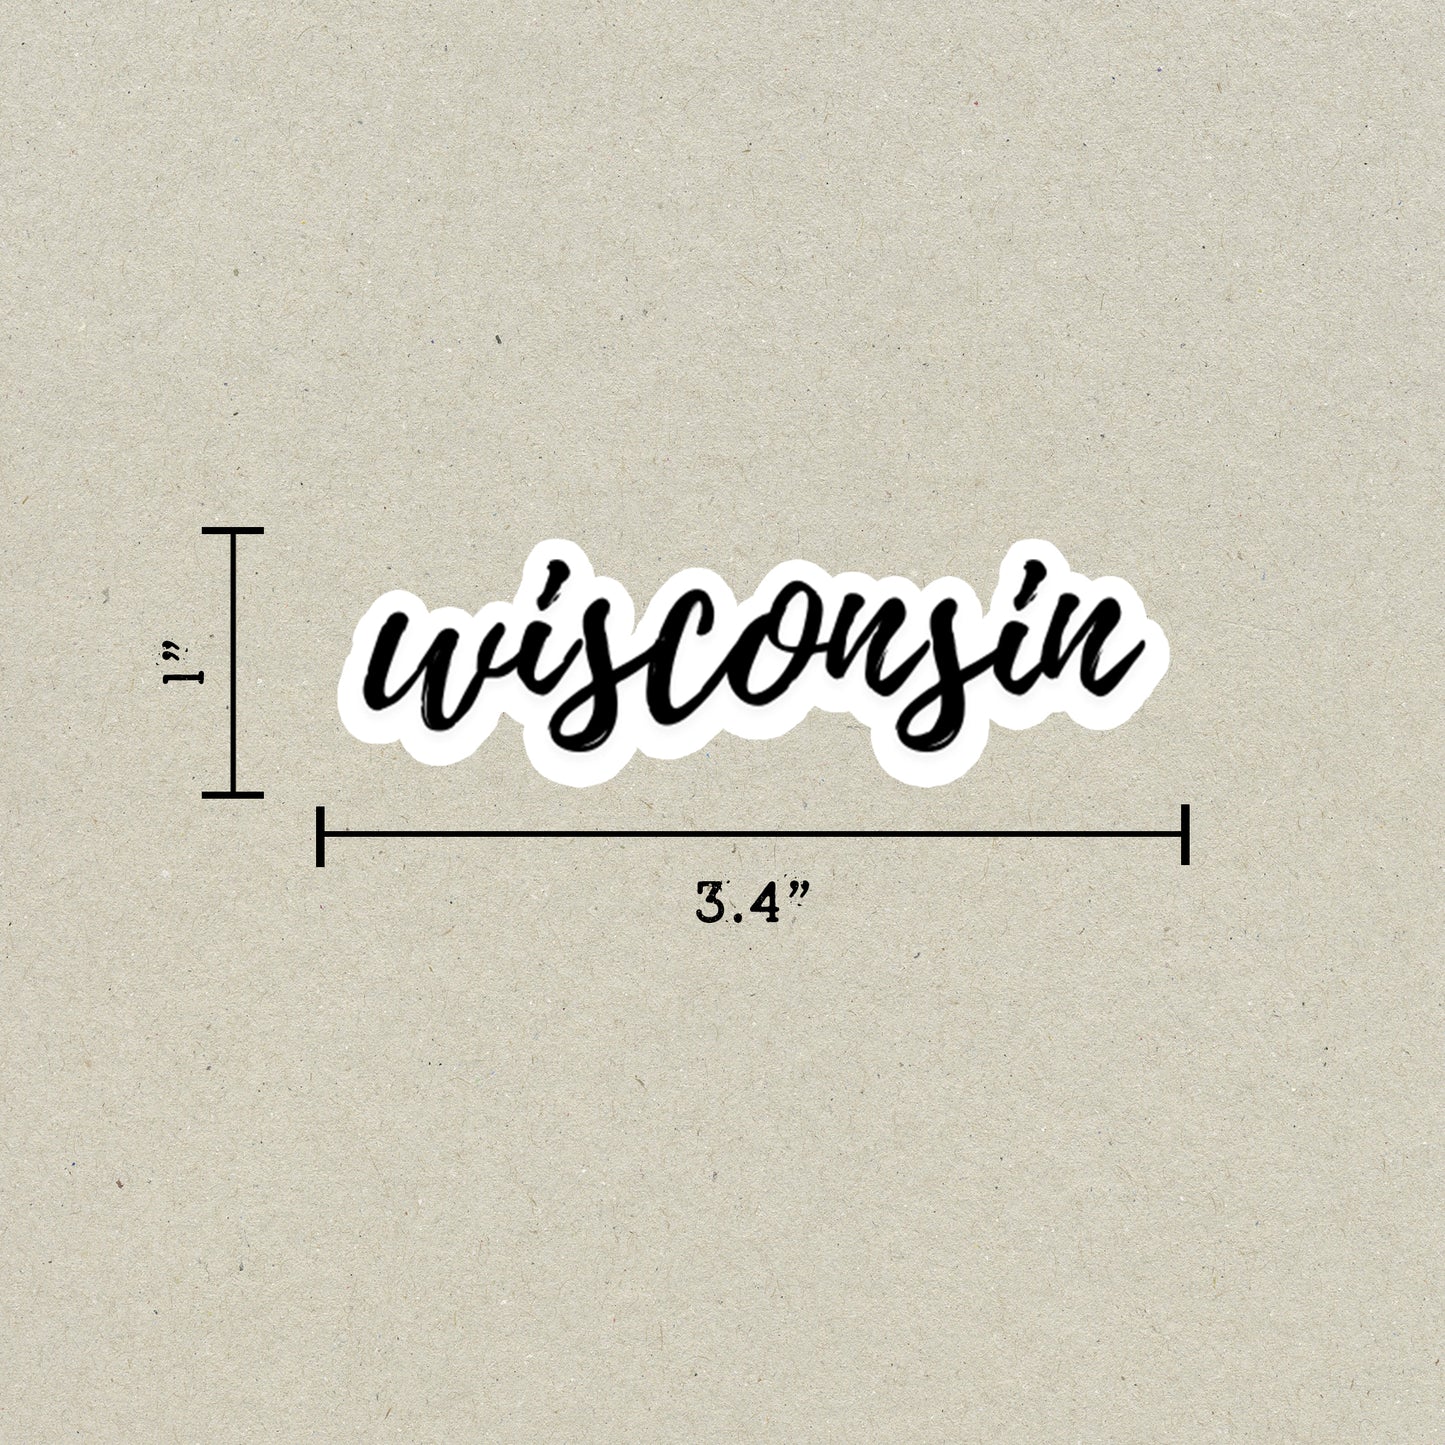 Wisconsin Cursive Sticker